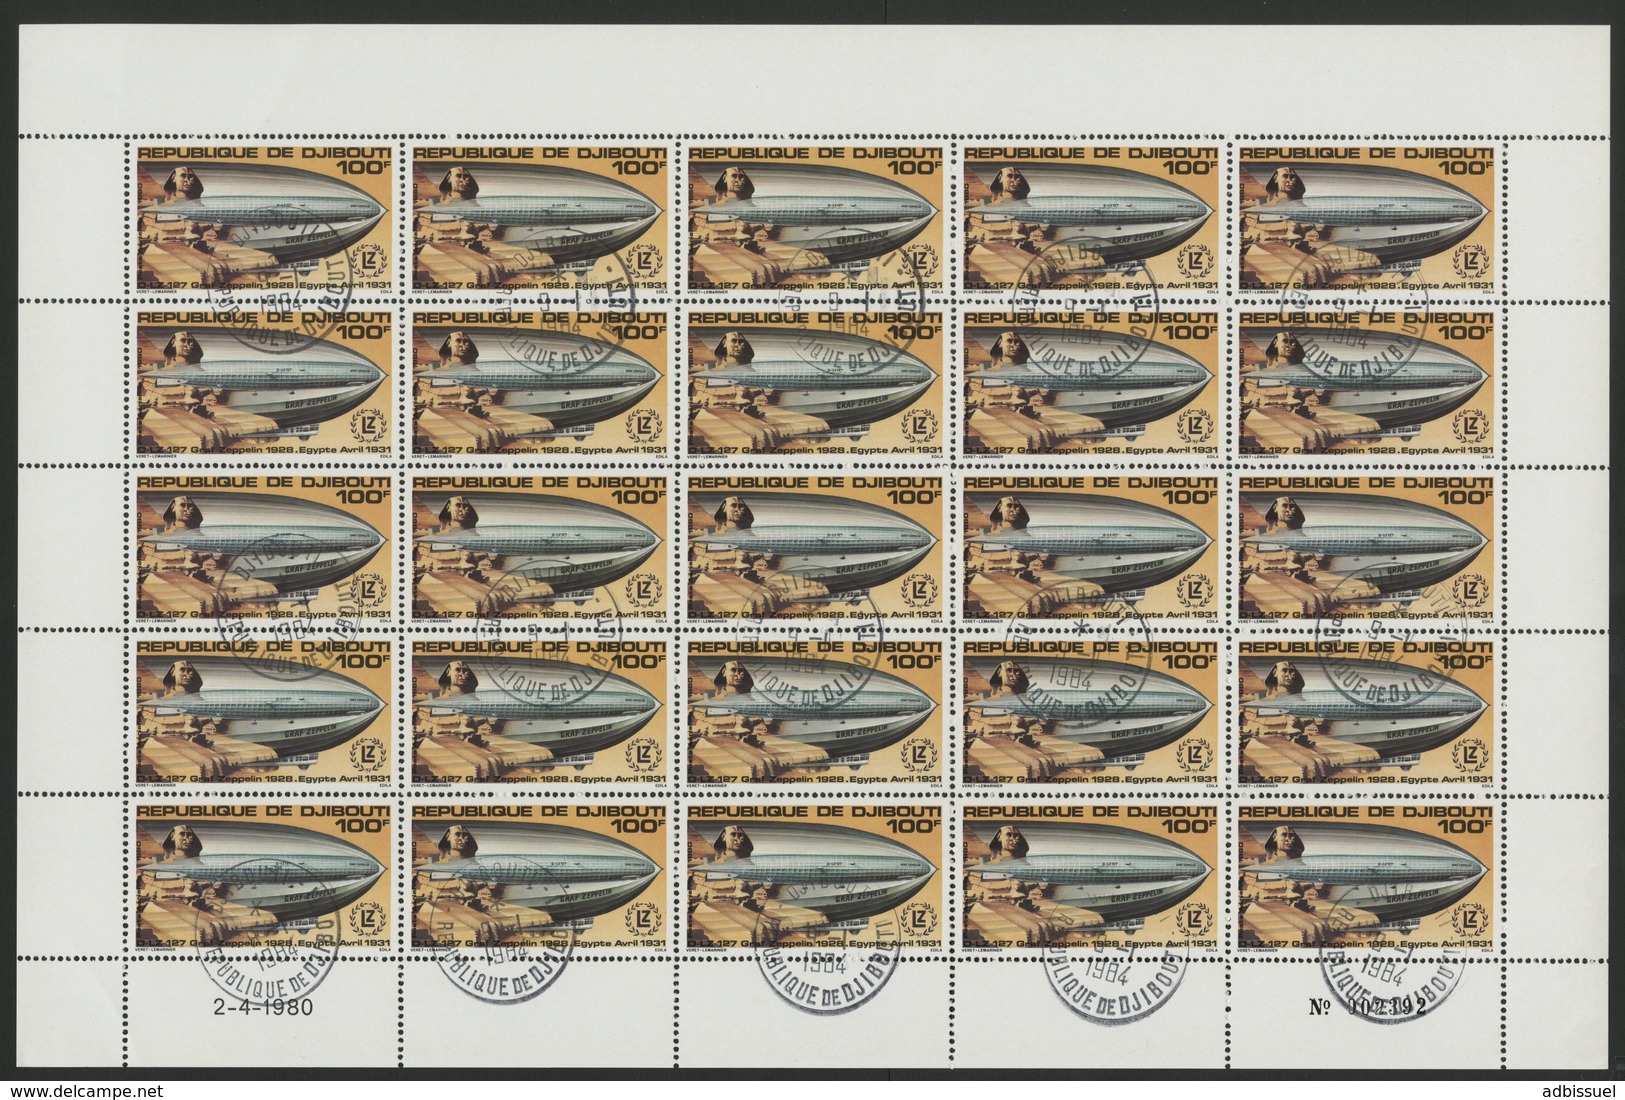 DJIBOUTI POSTE AERIENNE N° 144 FEUILLE COMPLETE DE 25 EXEMPLAIRES COTE 20 EUROS DU 100 Fr GRAFF ZEPPELIN - Zeppelin